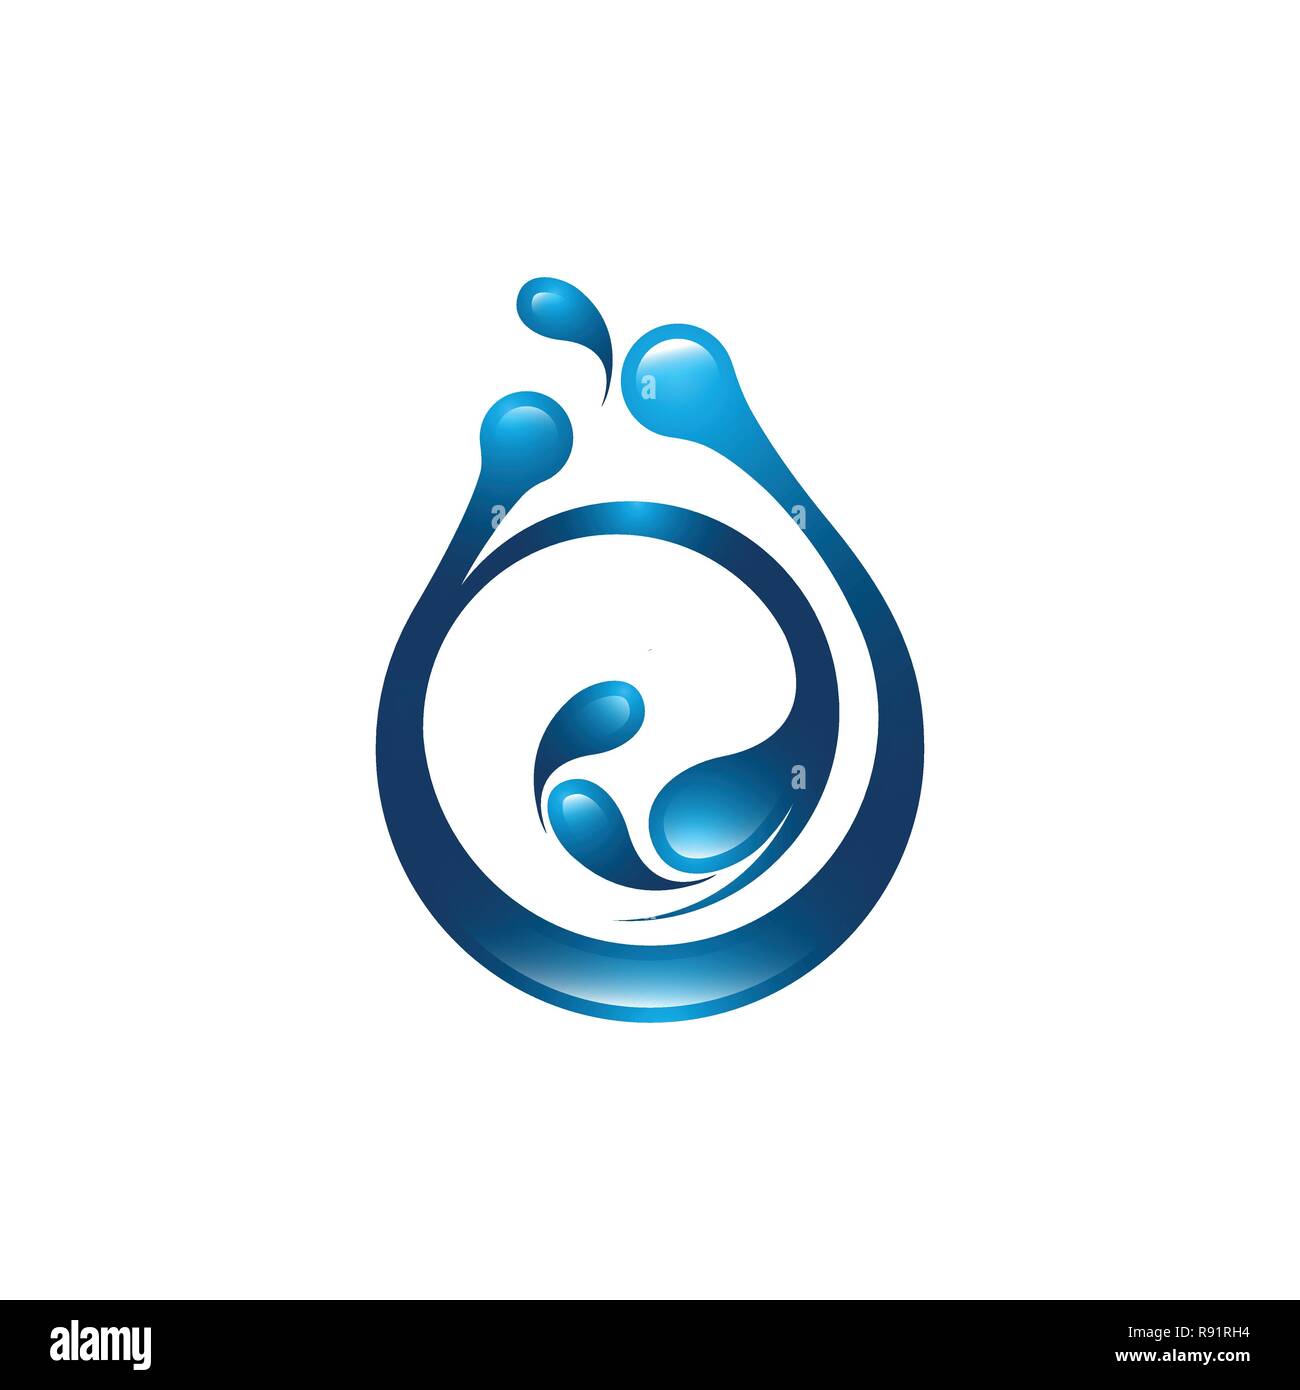 Vektor Logo Design perfekt geeignet für dynamische Welle, Ozean Meer Wasser Welle home resort, Segelboot, Kreuzfahrt Tour Company und Business Stock Vektor